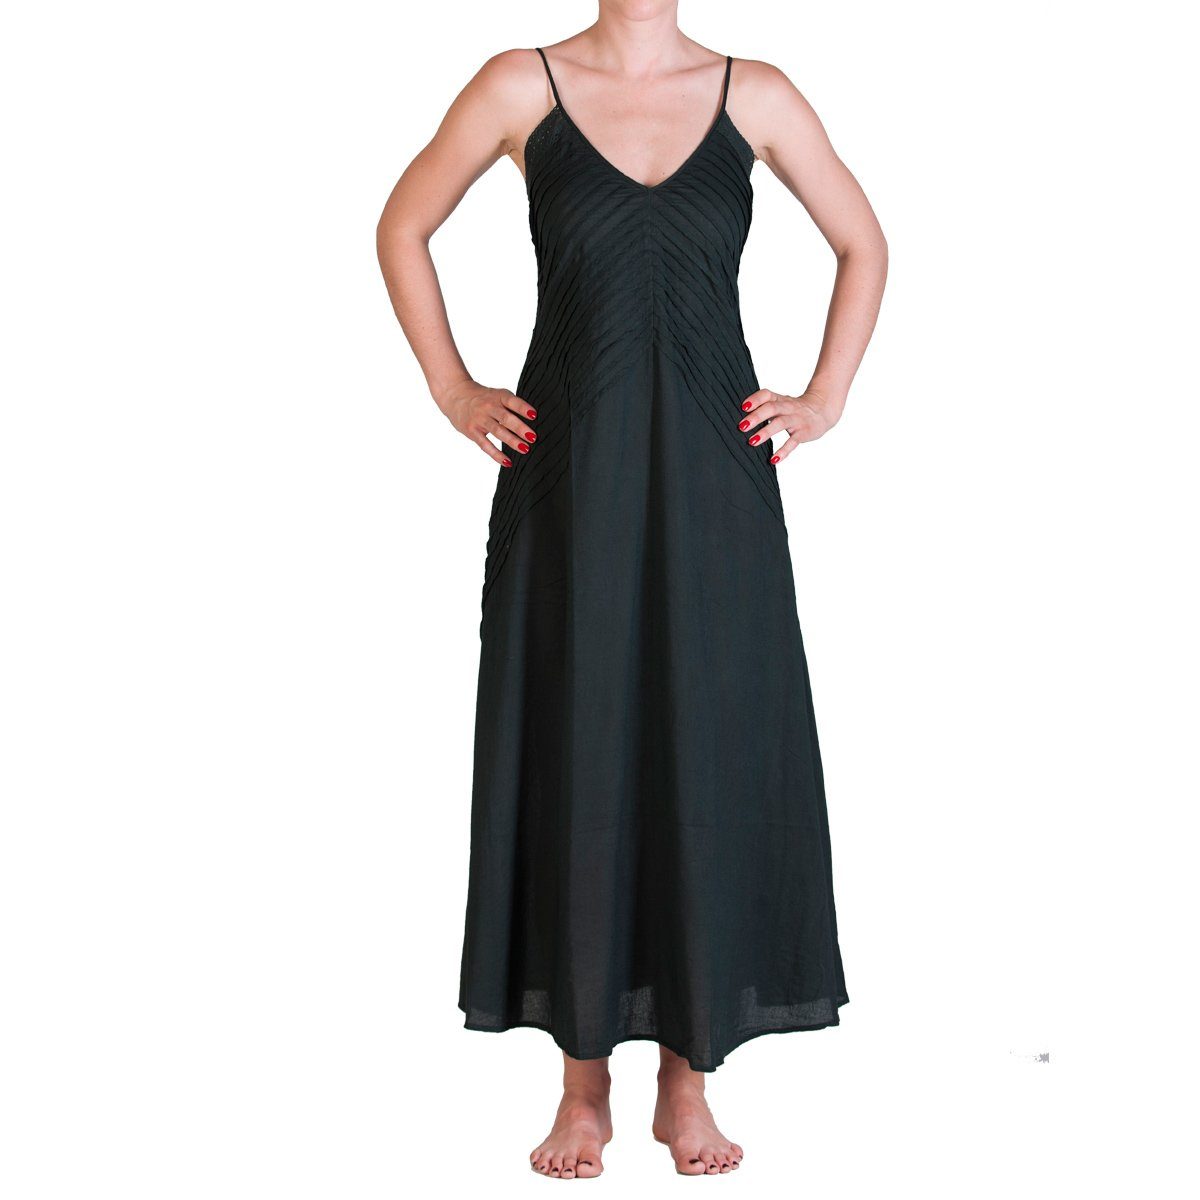 PANASIAM Tunikakleid Langes einfarbiges Sommerkleid im Rücken gerafft Onesize Gr. S und M Langes Kleid aus feiner Baumwolle auch als Strandkleid gesmoked 001 schwarz